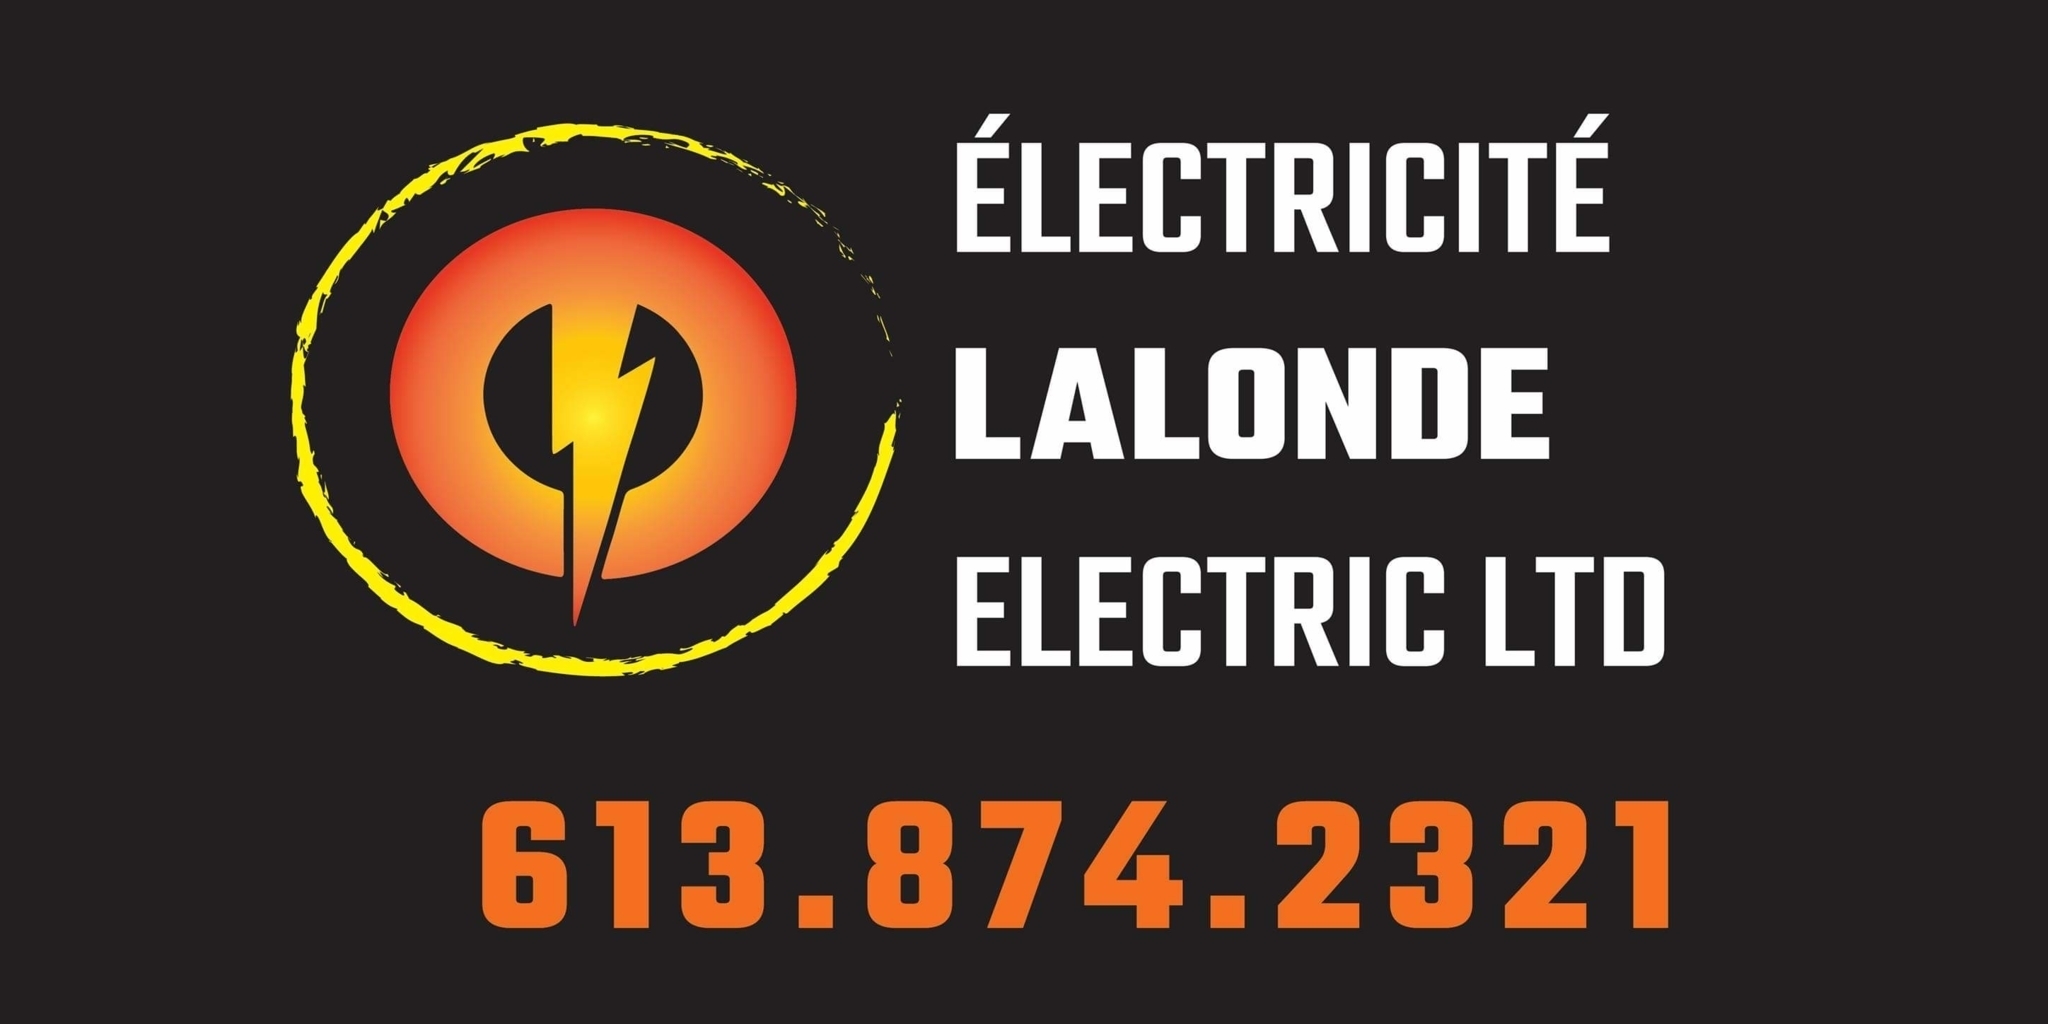 Electricite Lalonde Electric Ltd - Électriciens